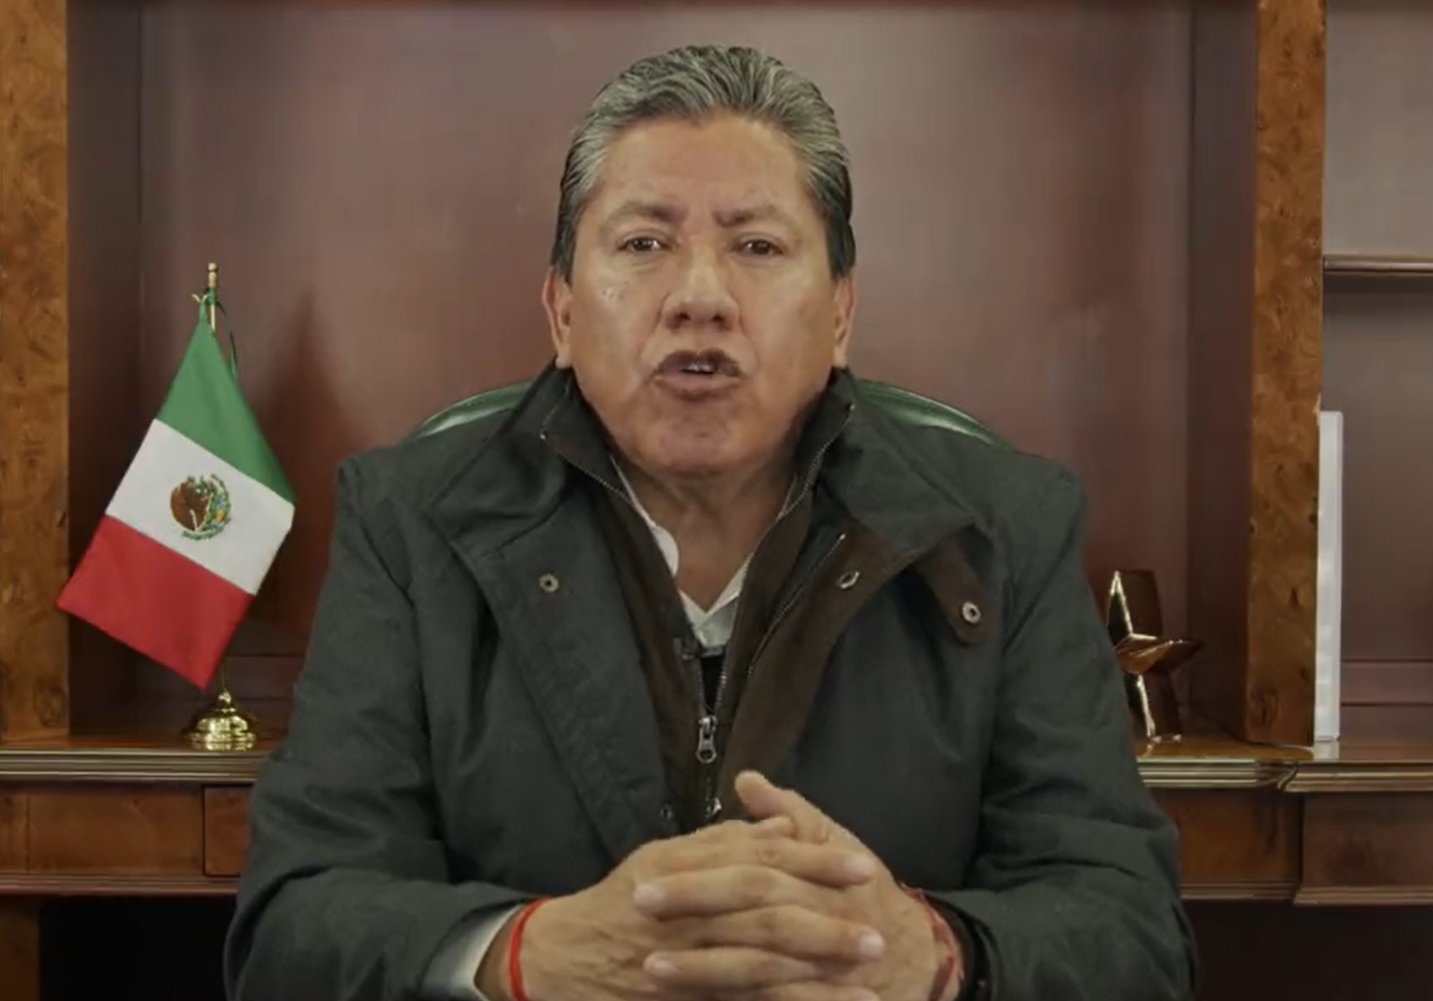 El gobernador de Zacatecas, David Monreal. Foto: Gobierno estatal.